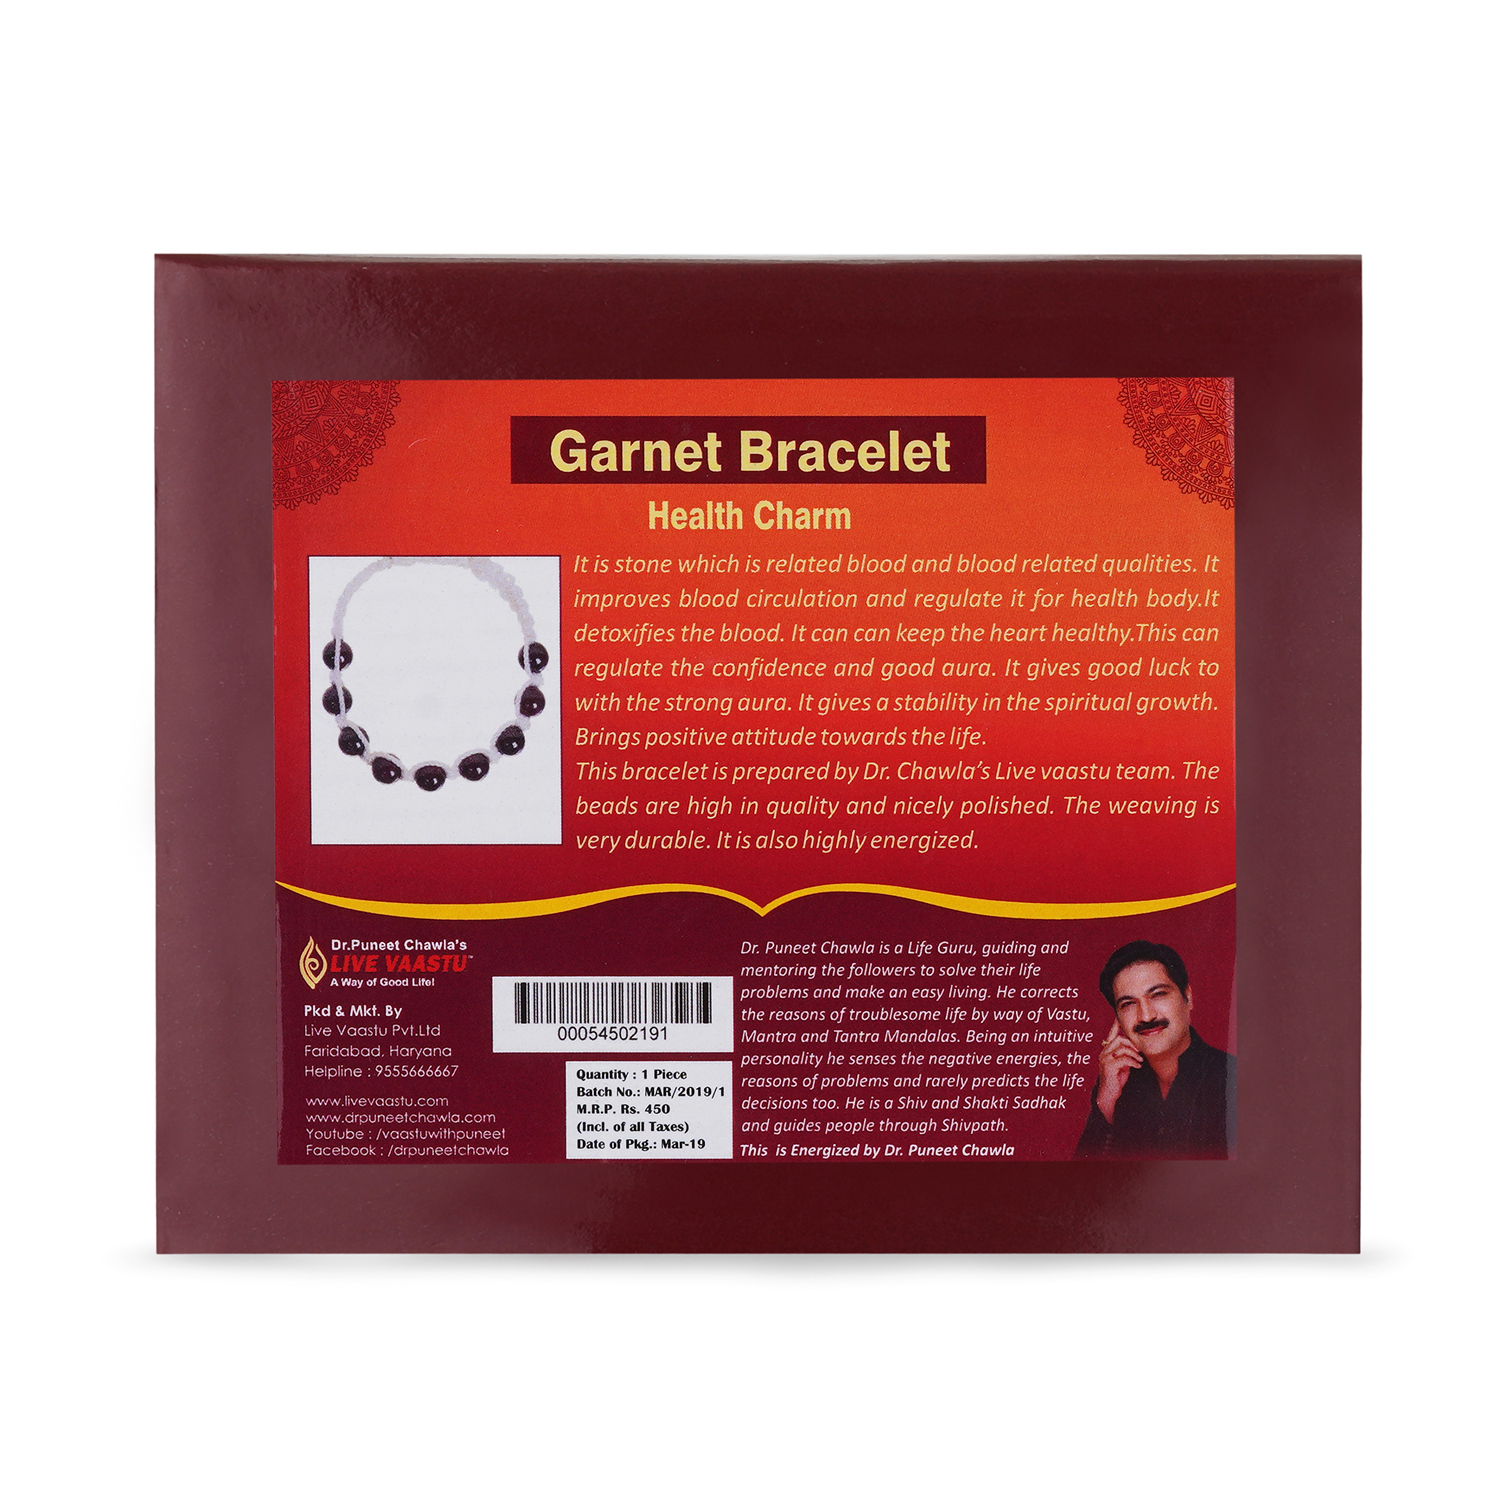 Garnet braclet